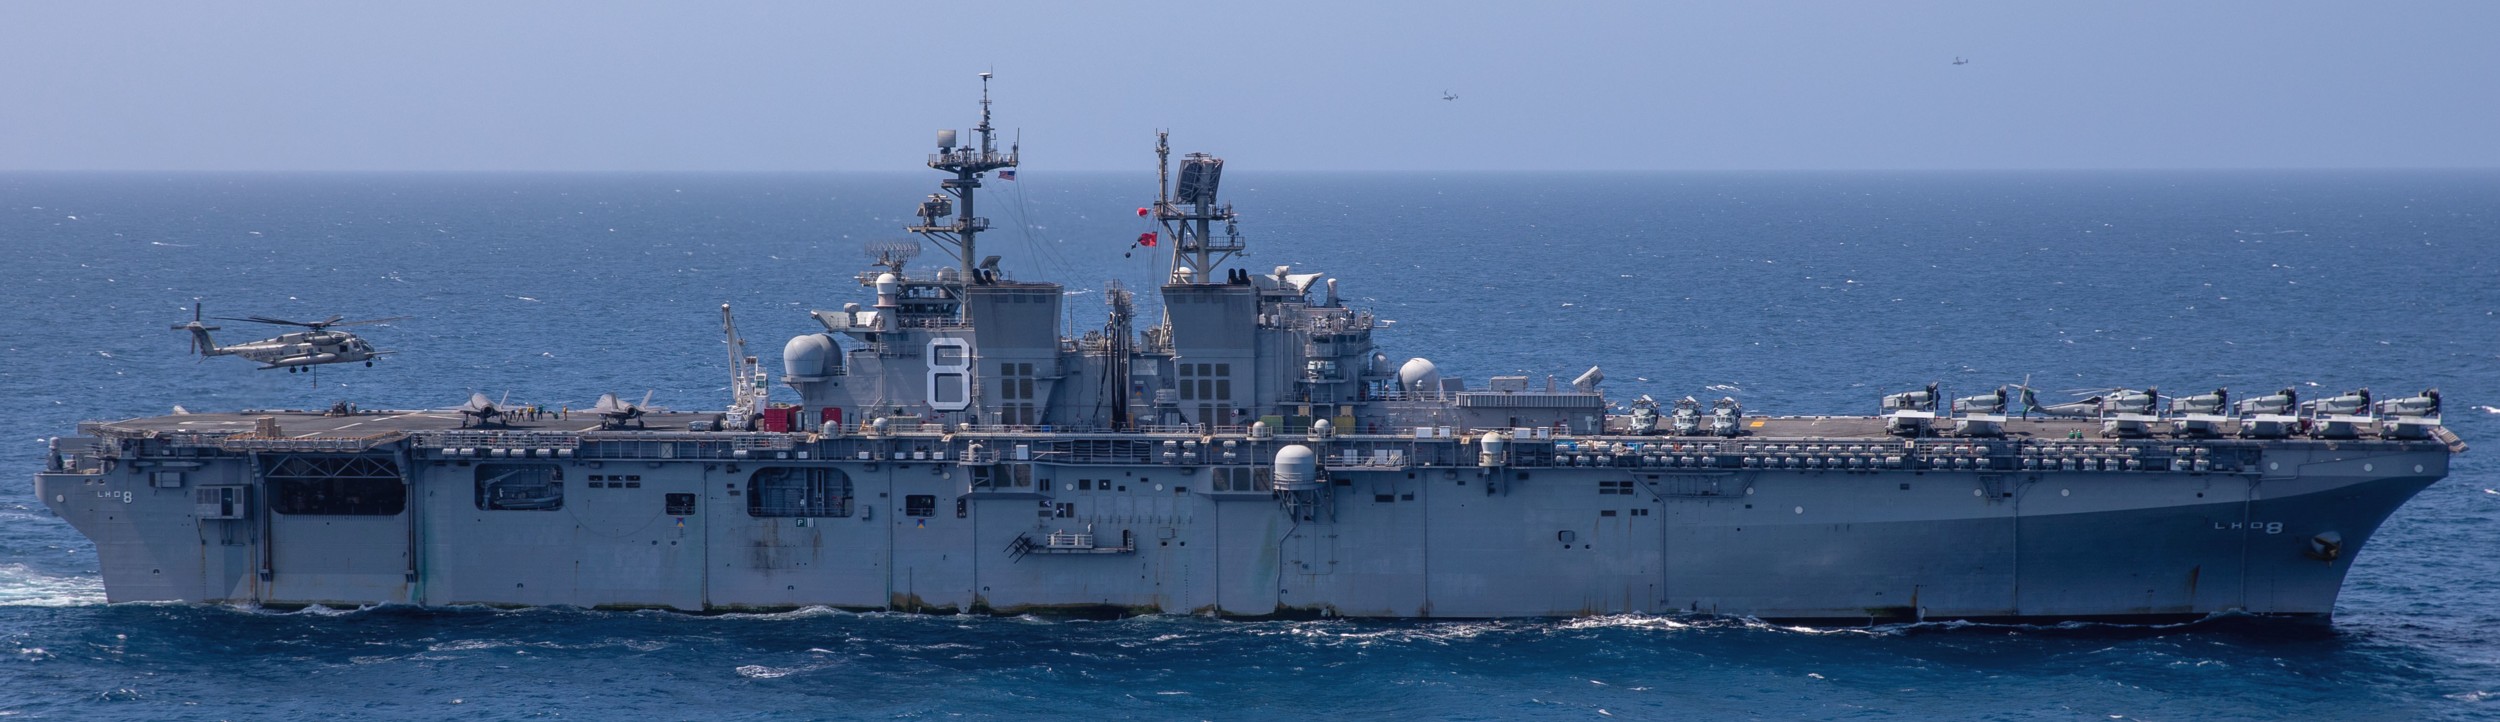 lhd-8 uss makin island amphibious assault ship landing helicopter dock us navy vmm-164 marines 137